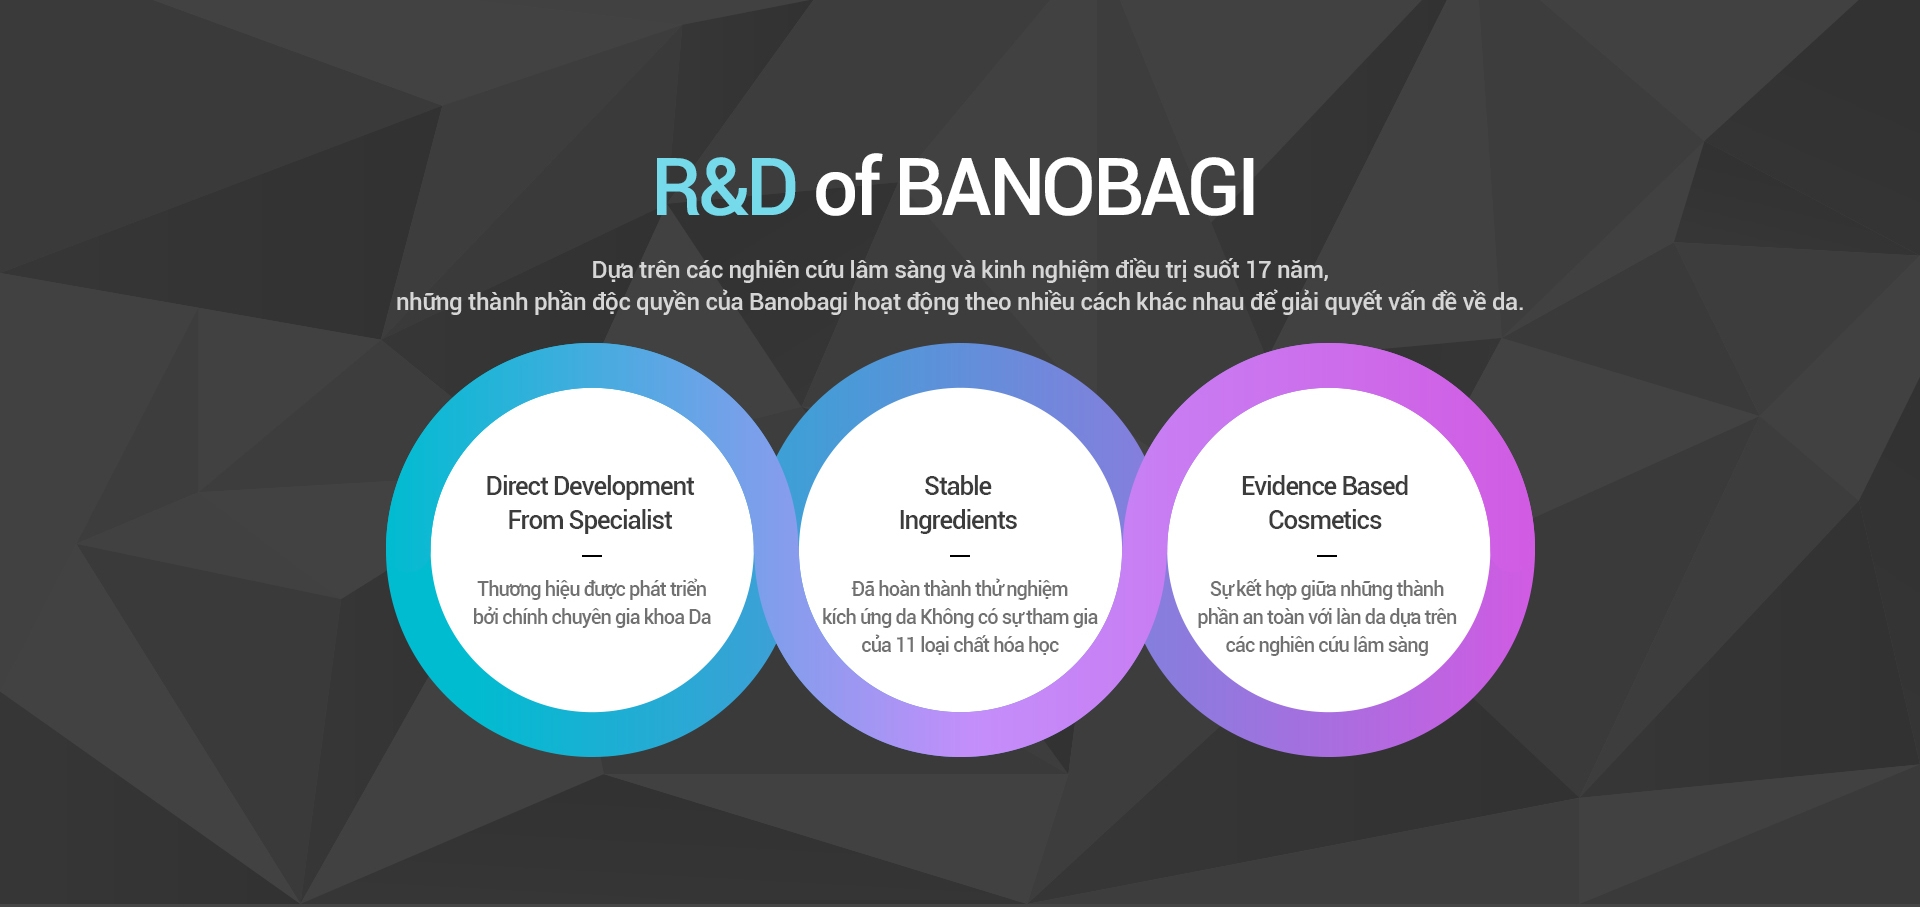 R&D of BANOBAGI